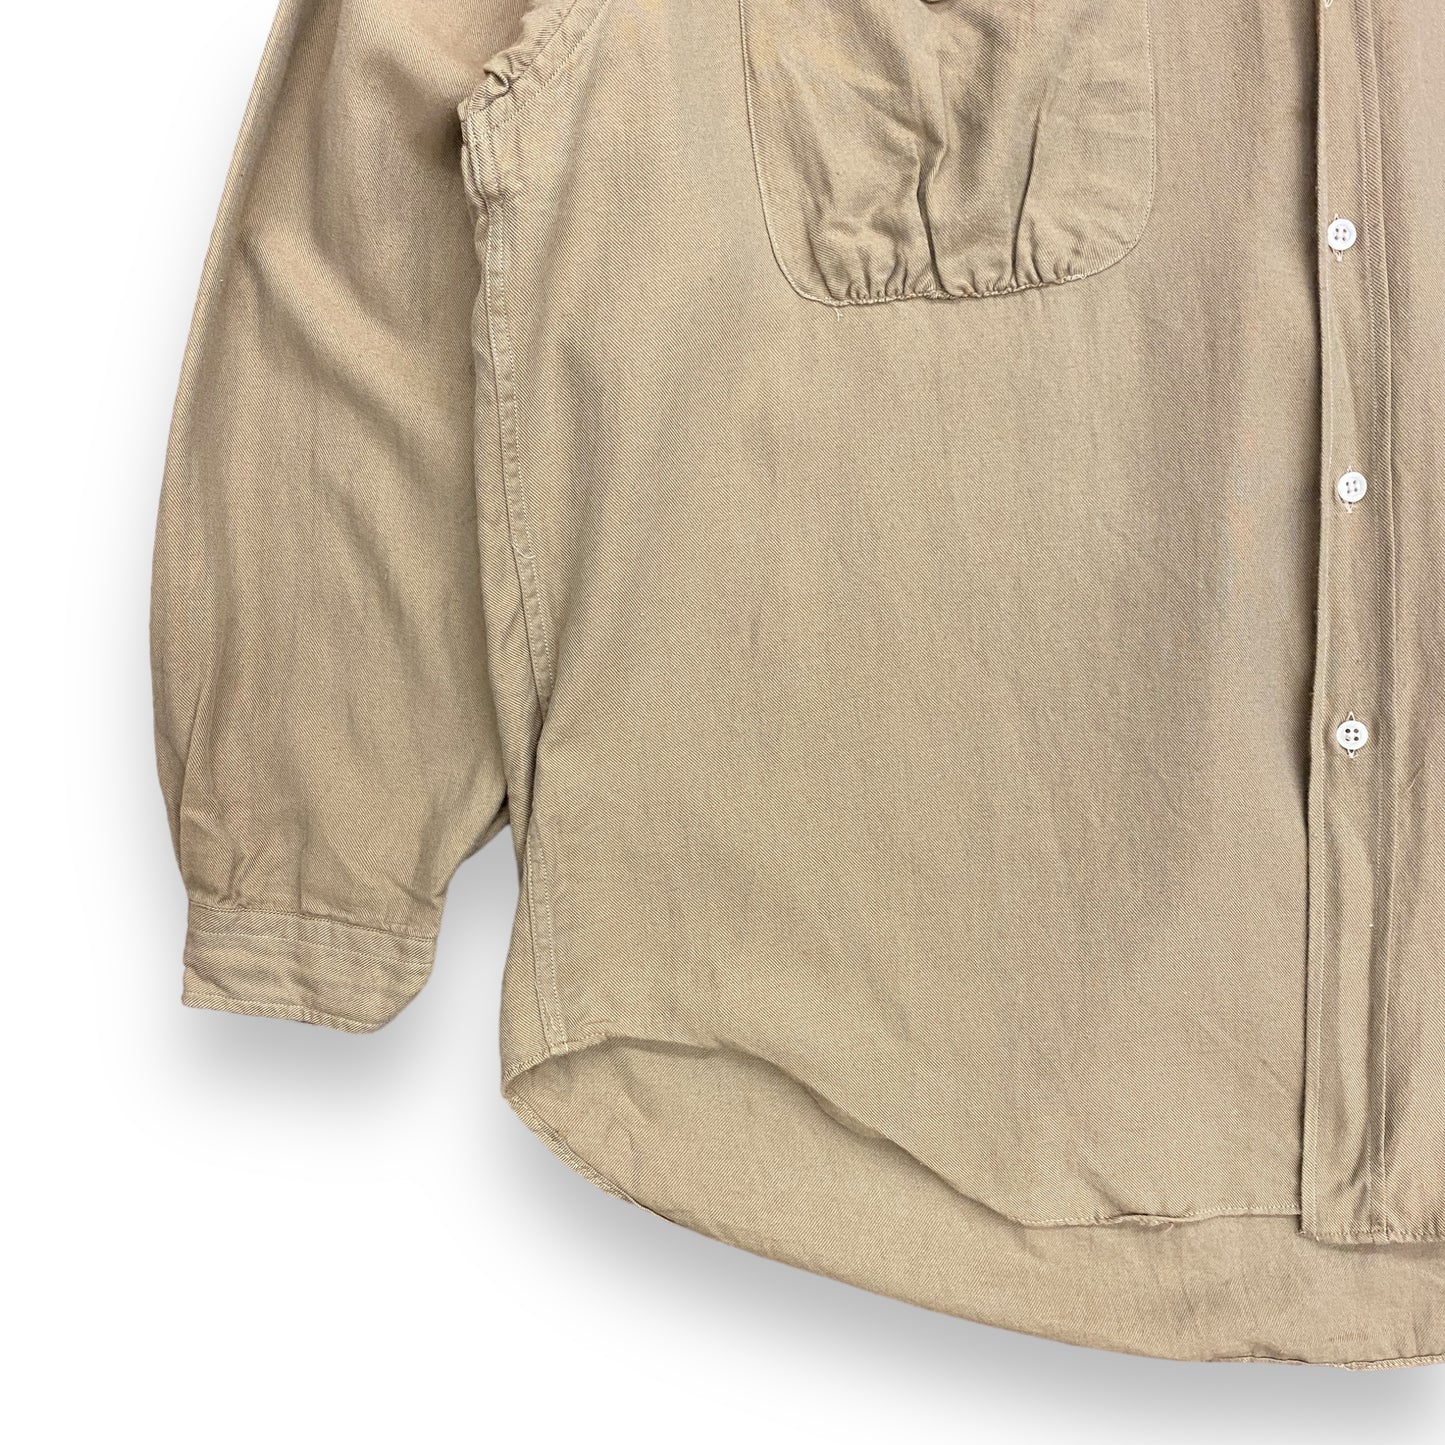 Giorgio Armani Le Collezioni Khaki Tan Cotton Blend Button Up - Size Small